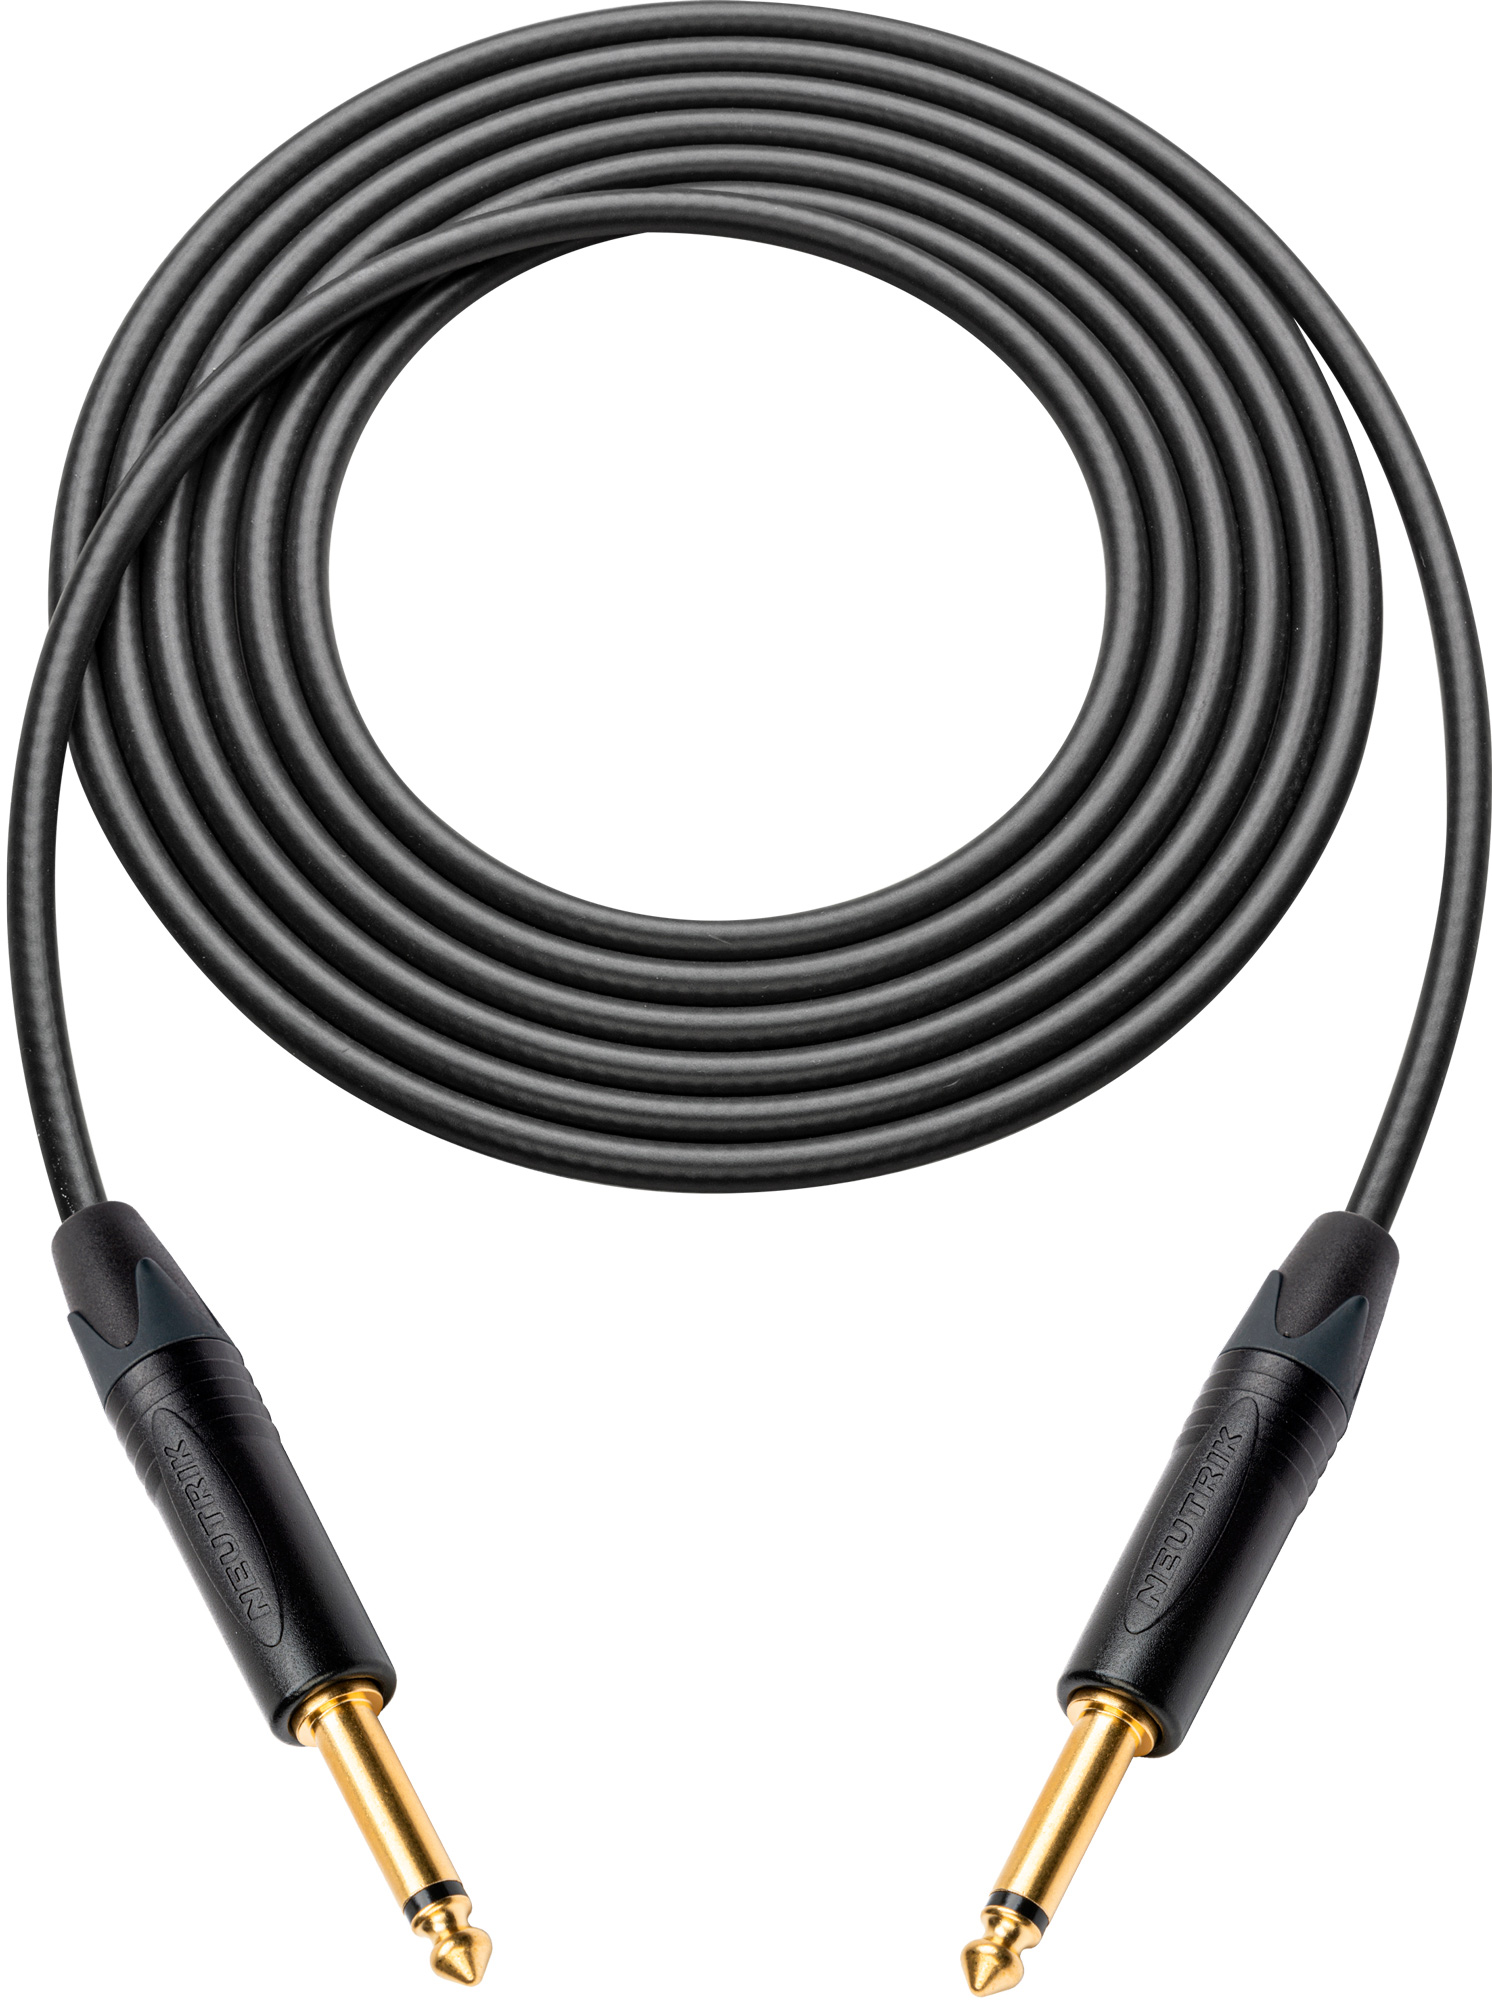 Canare GS-6 Instrument Cable w/Neutrik XS 1/4 Phone Plugs 50 Ft. Black